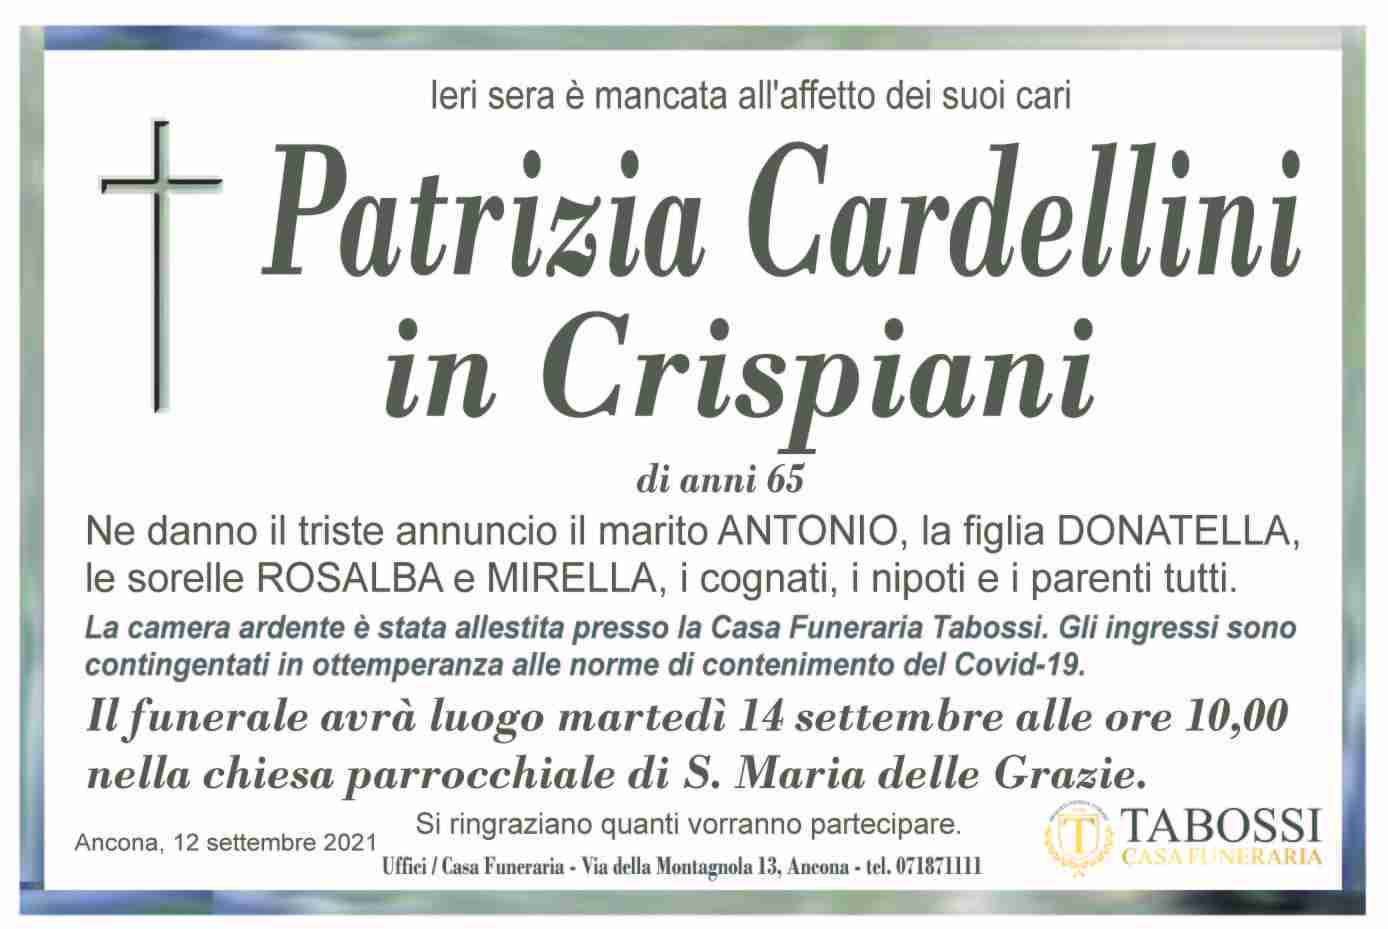 Patrizia Cardellini